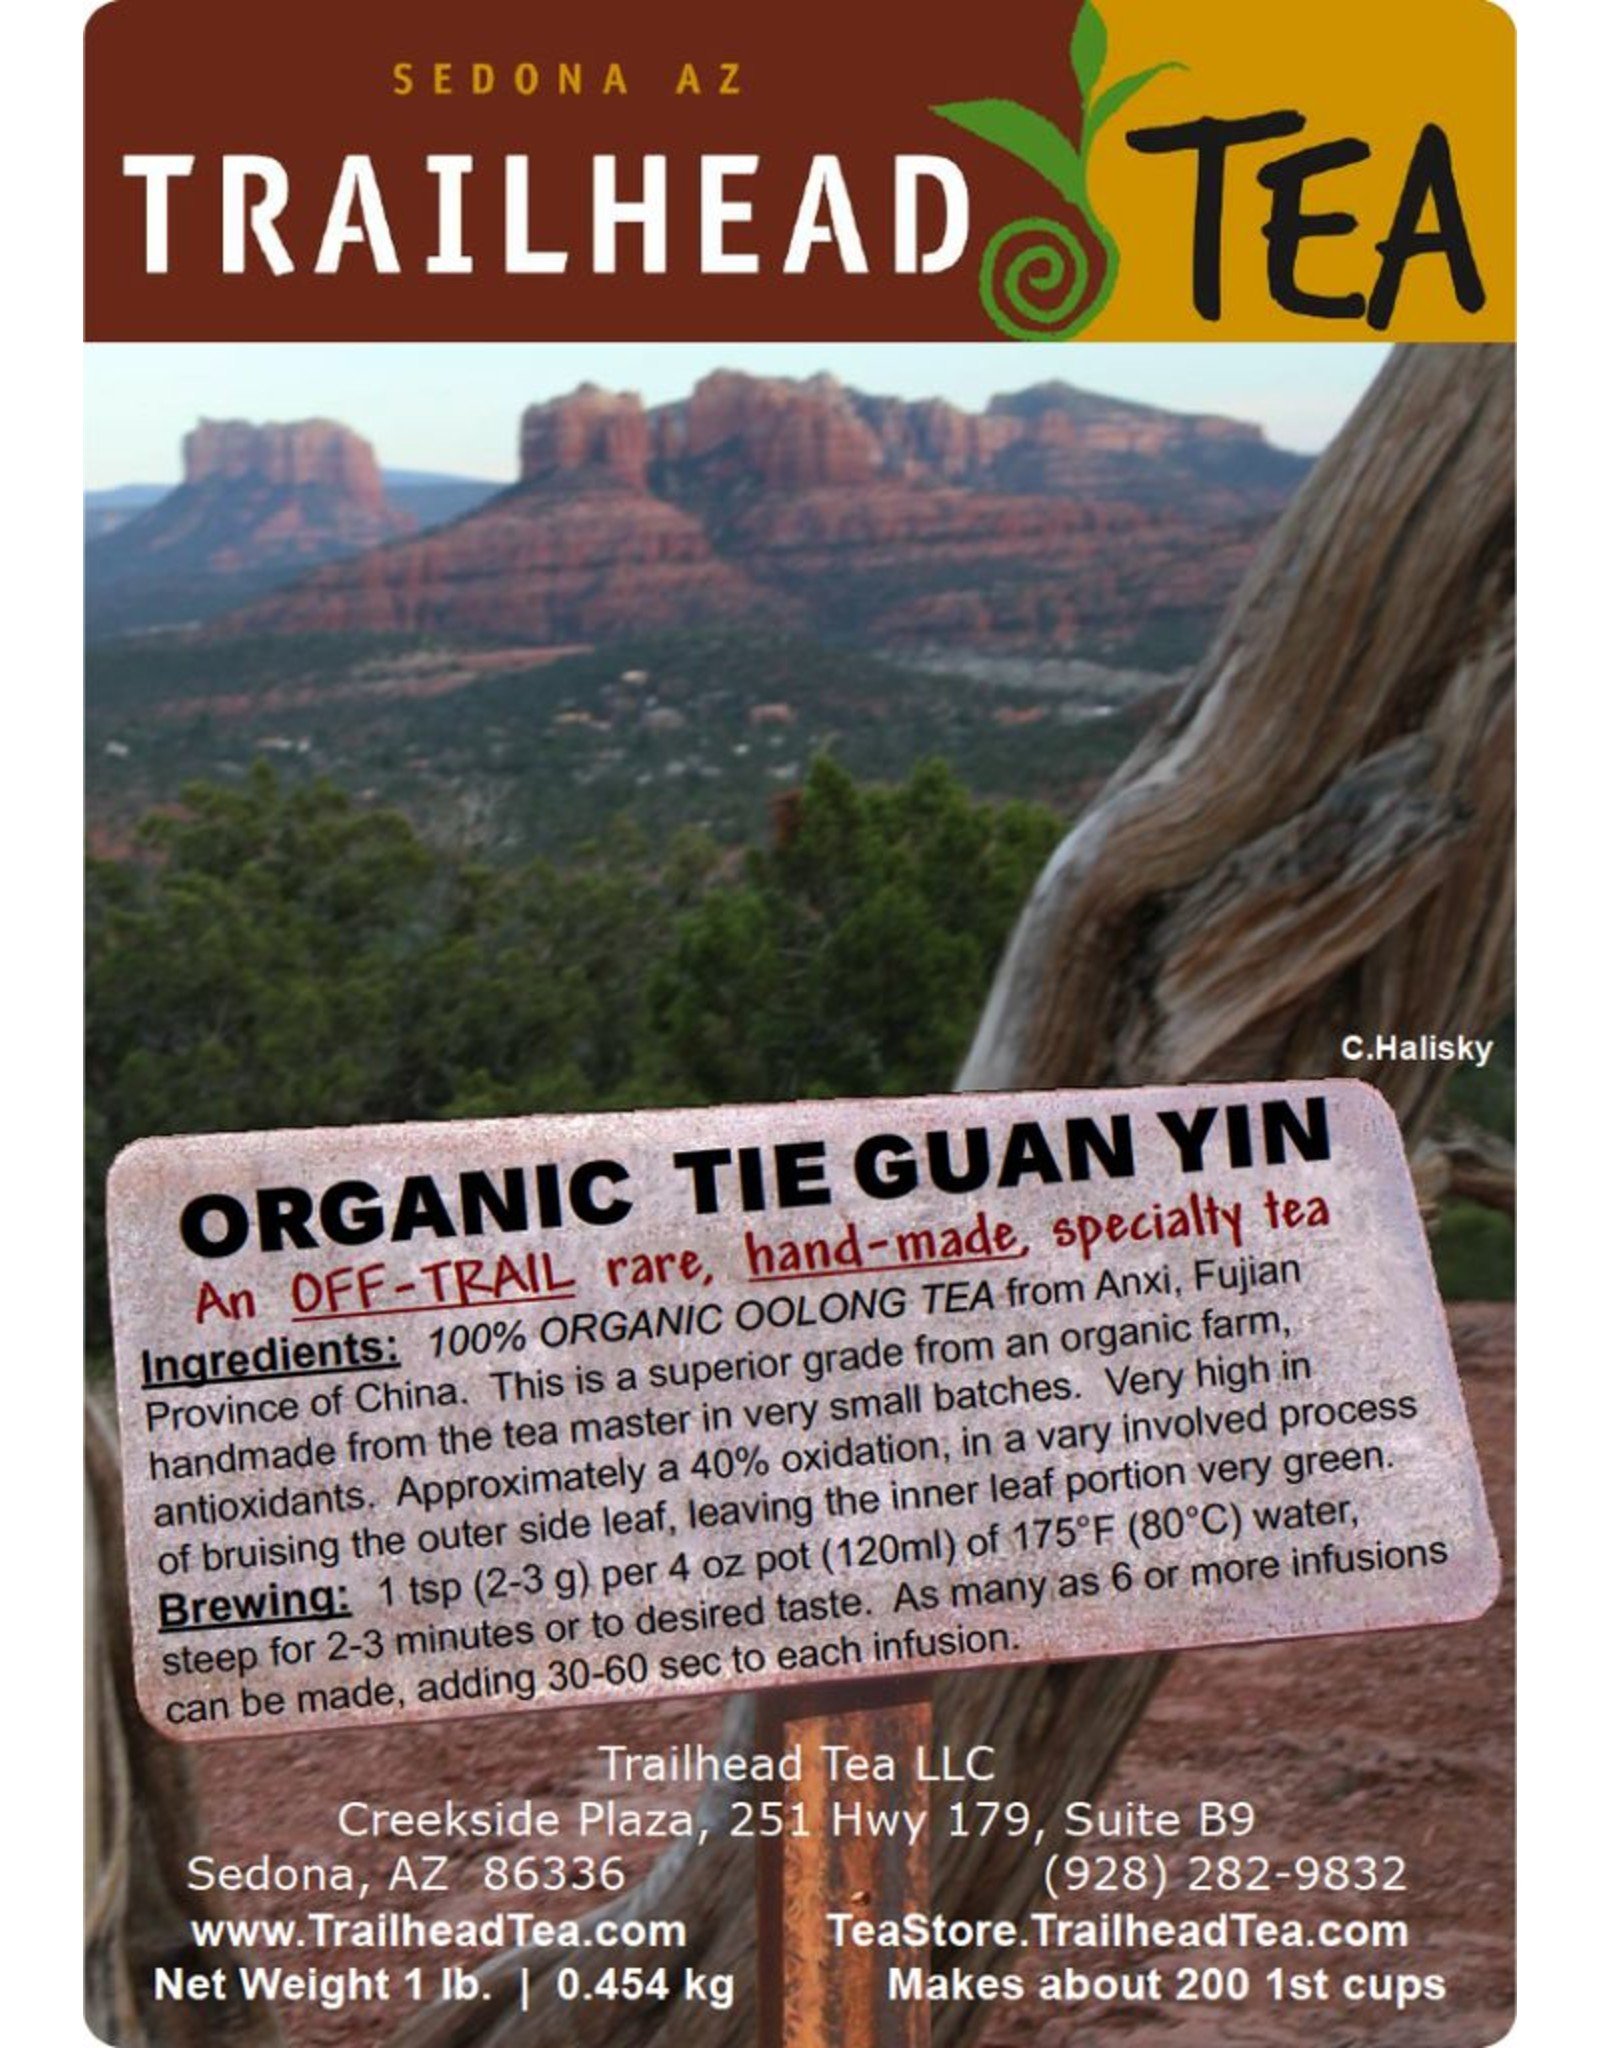 Off-Trail-Rare Tie Guan Yin, Organic Top/Handmade Tie Guan Yin (Off-Trail Oolong)